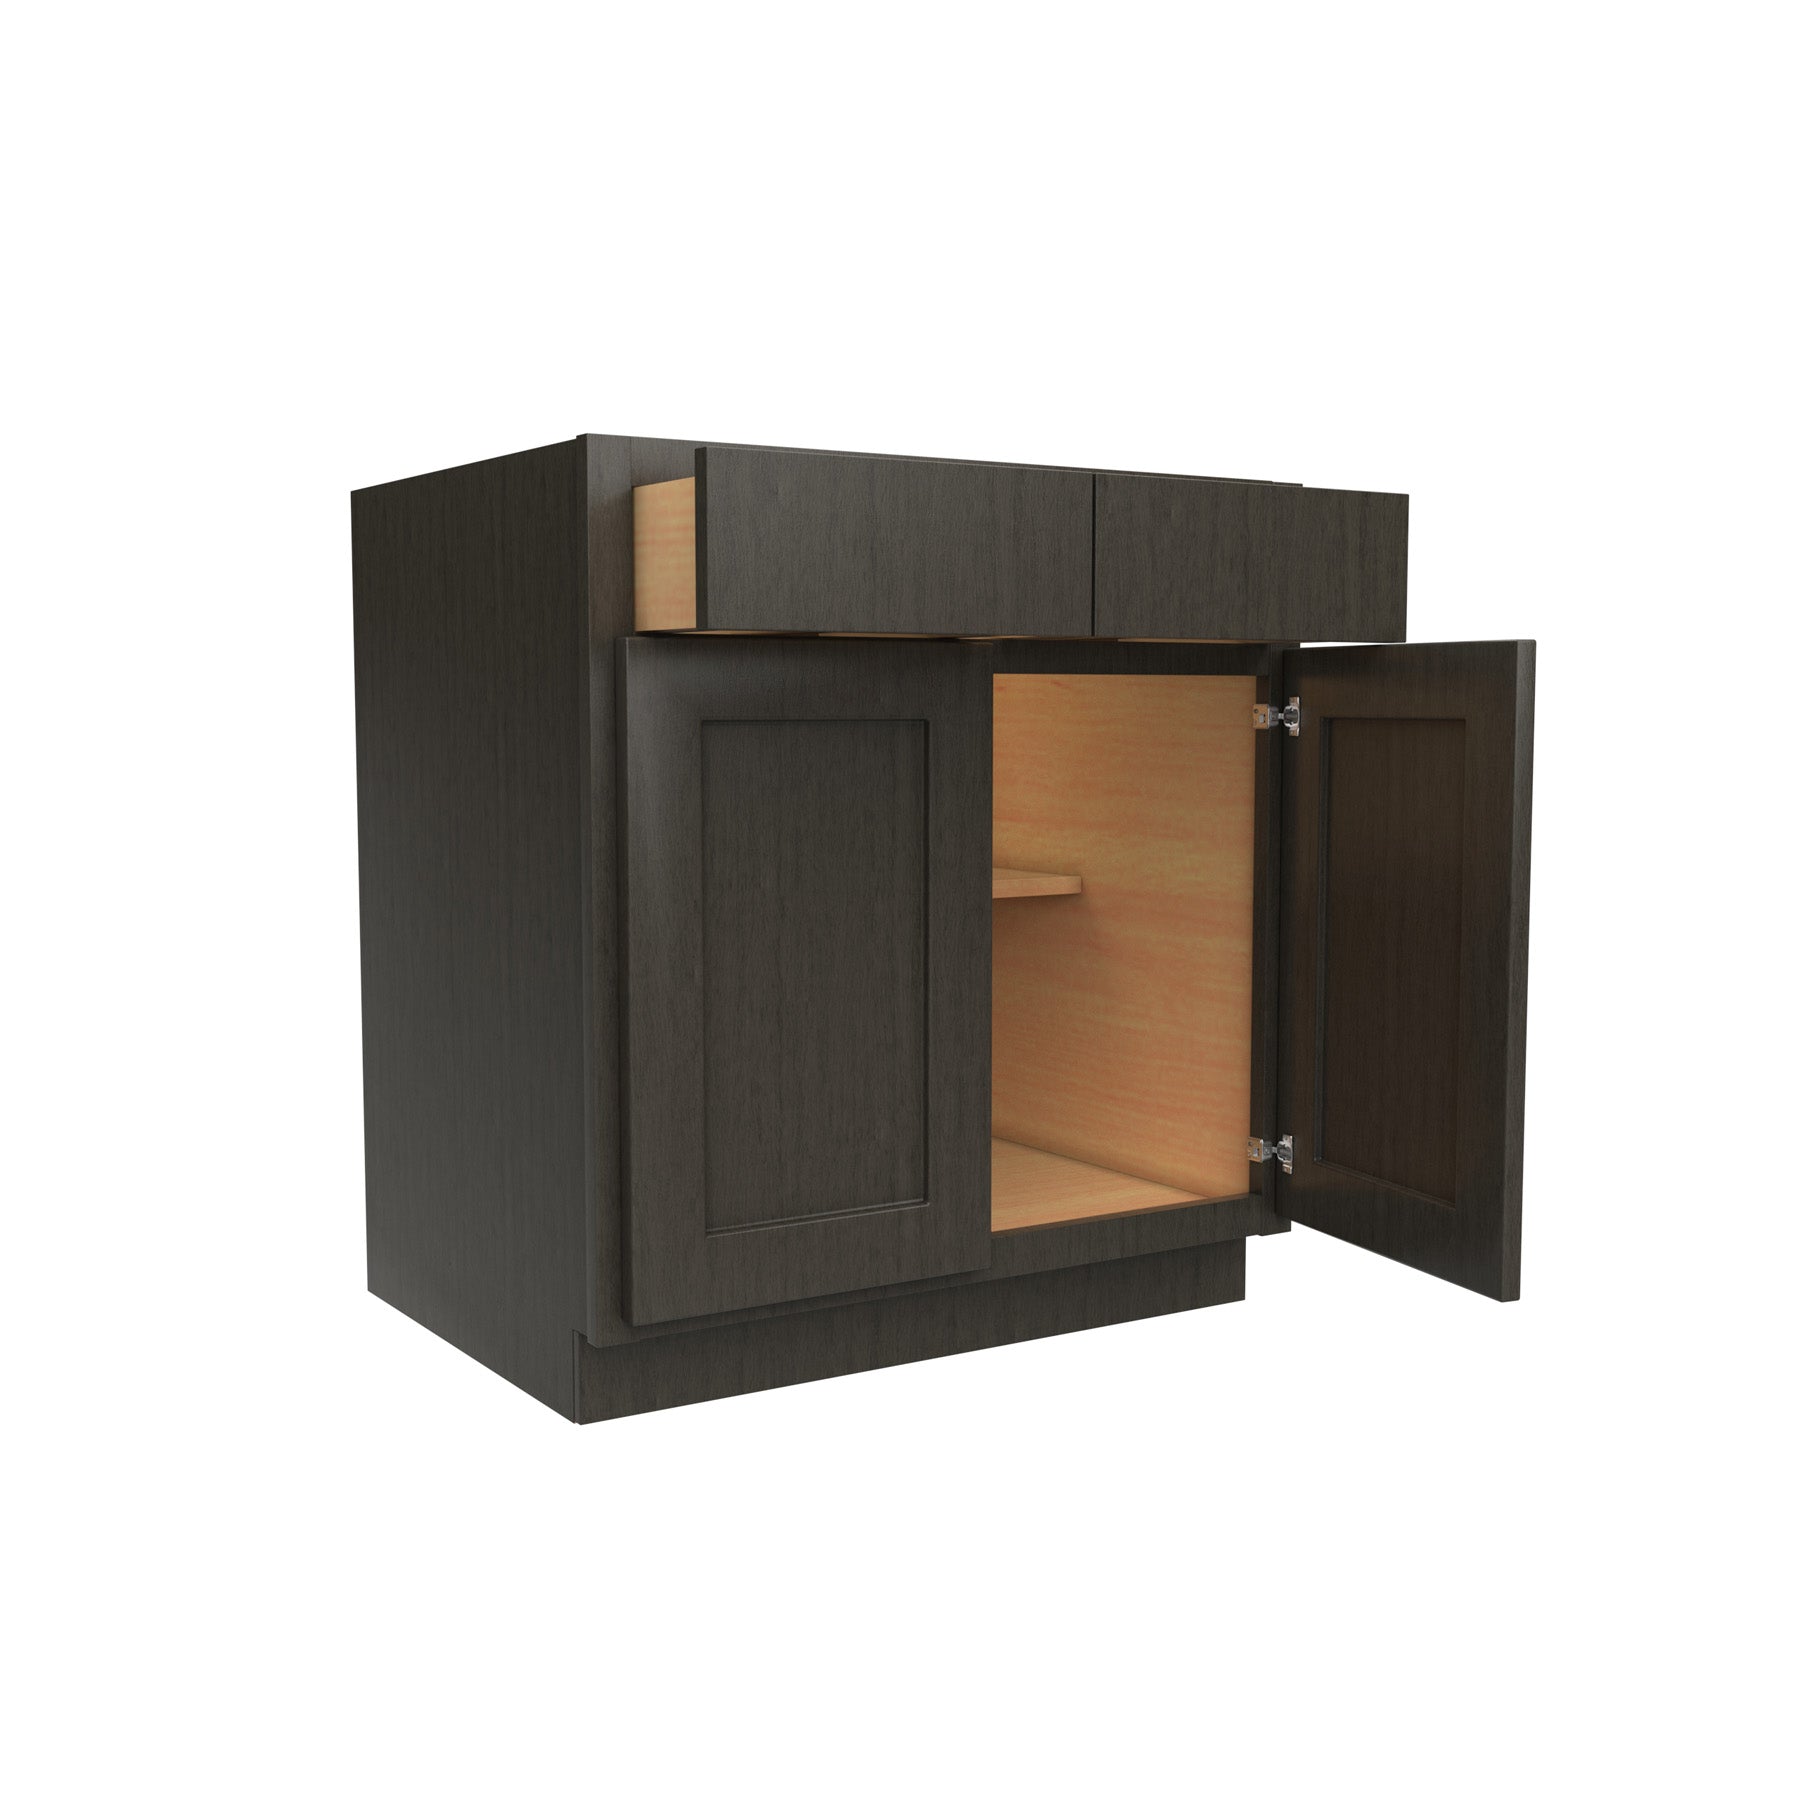 Luxor Smoky Grey - Double Door Base Cabinet | 30"W x 34.5"H x 24"D